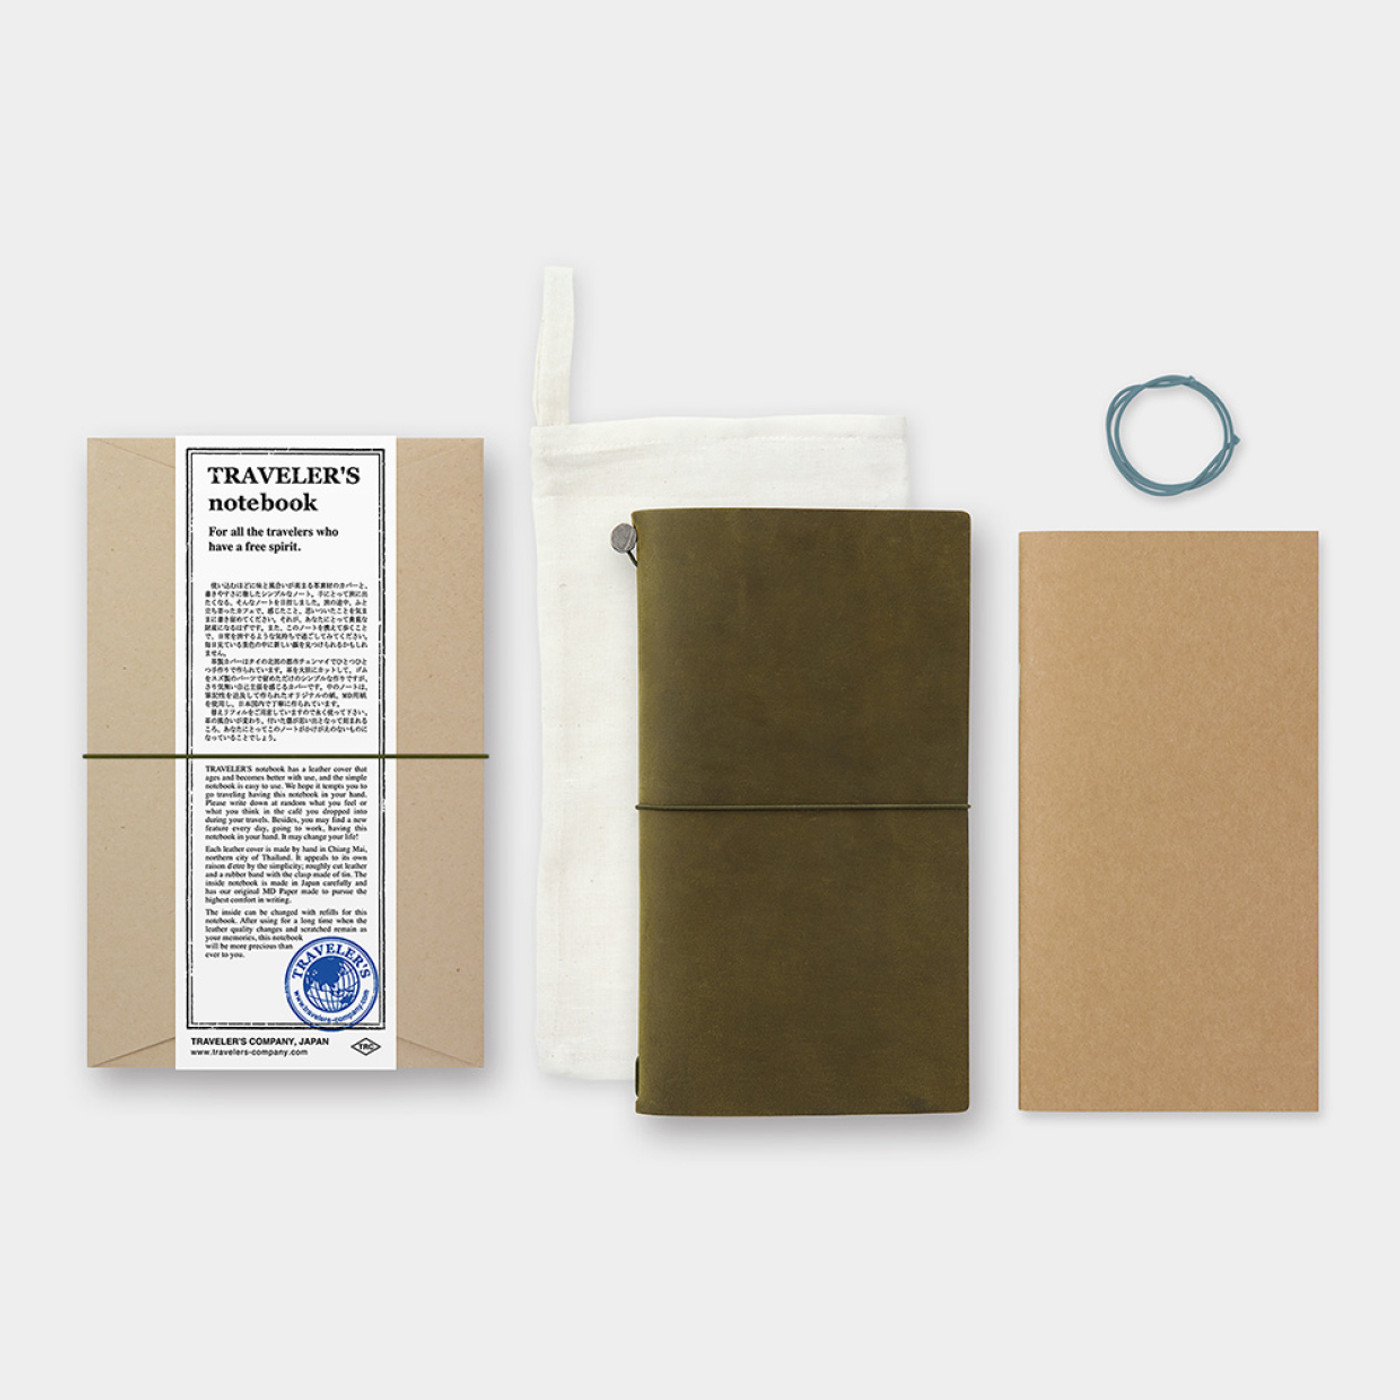 TRAVELER'S notebook - Leather Cover starter kit